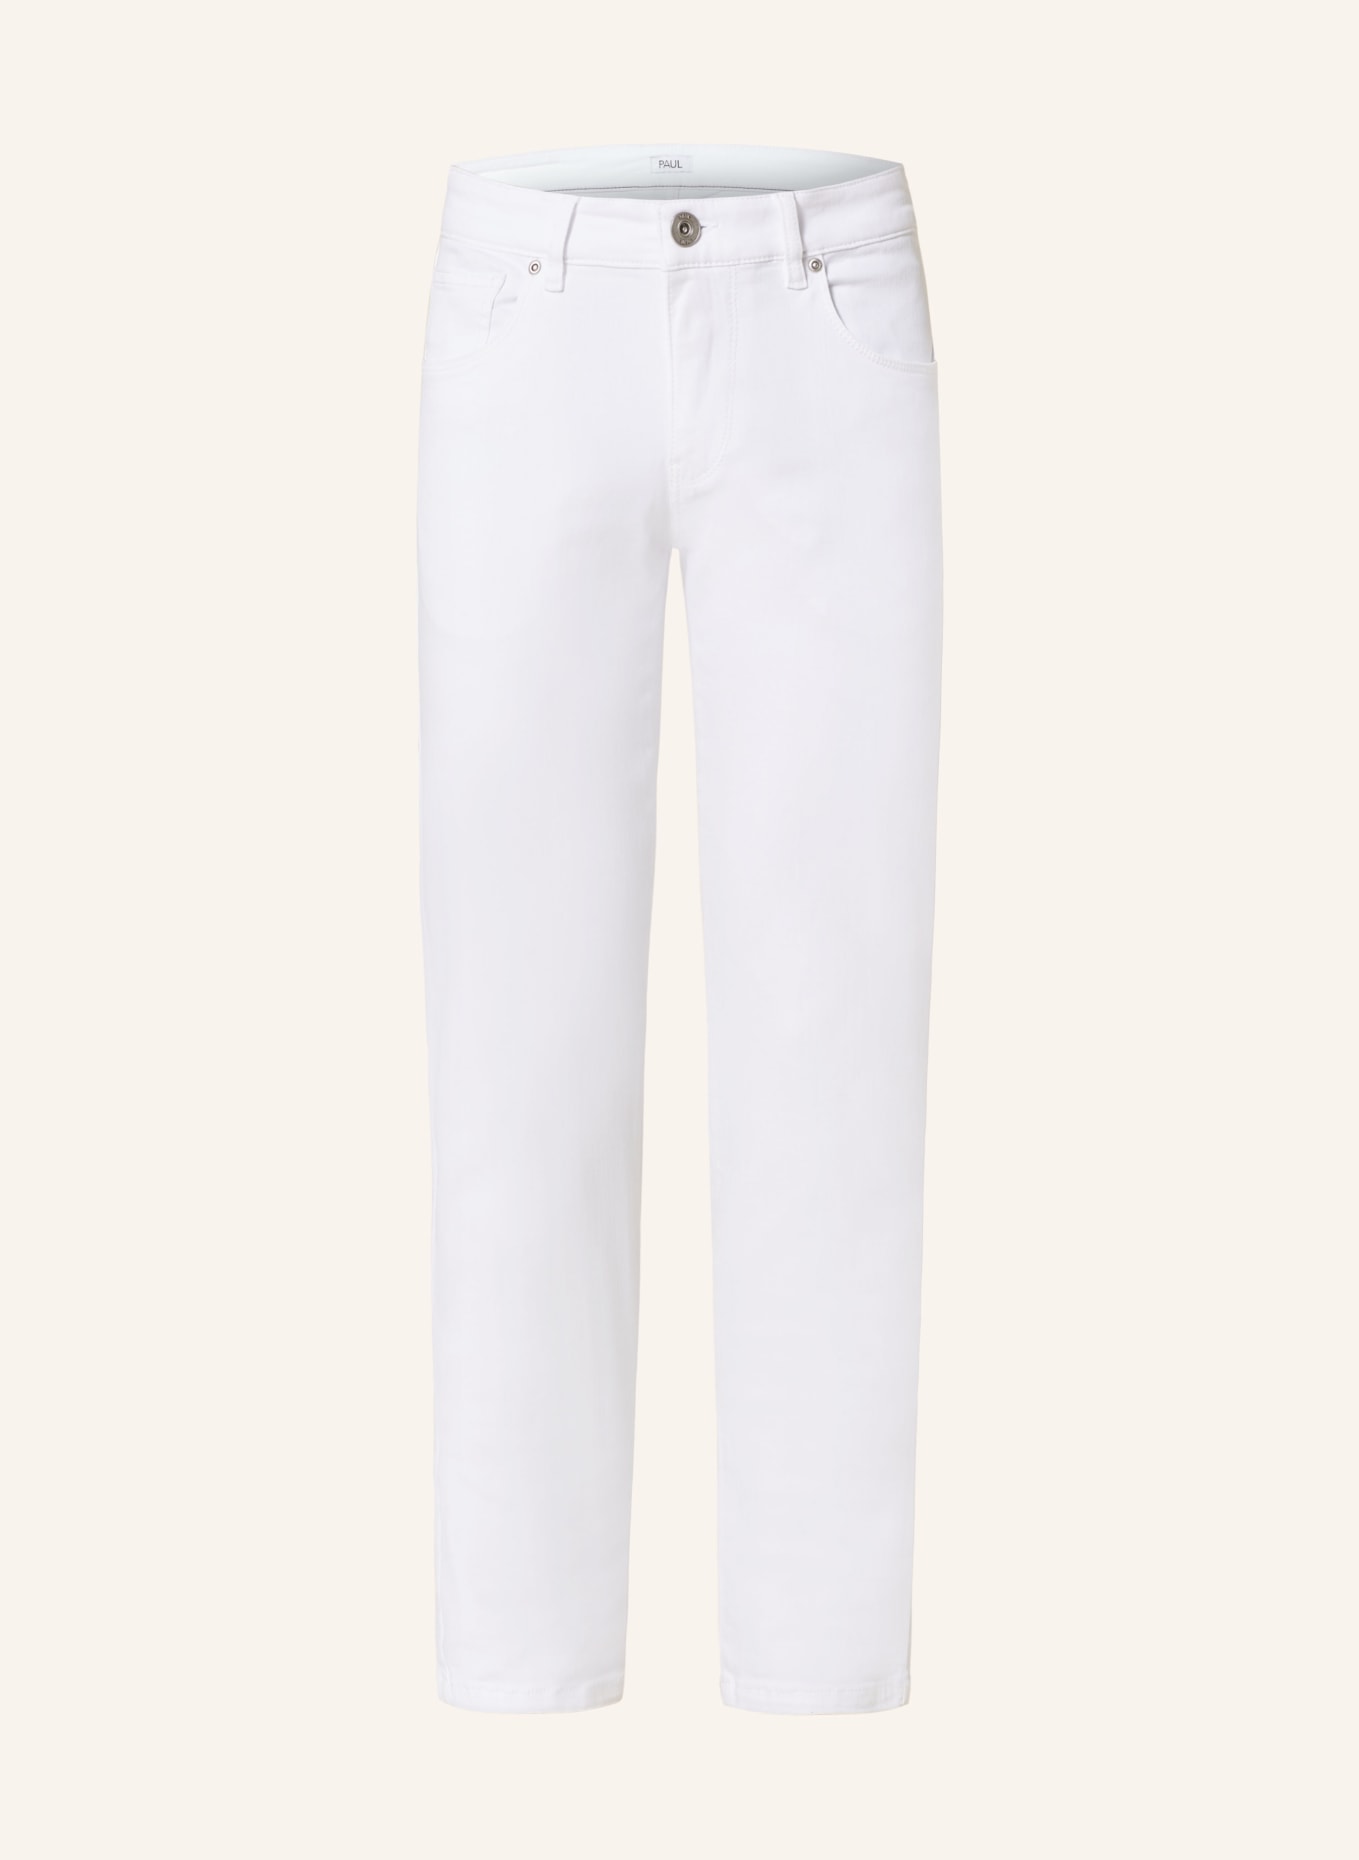 PAUL Jeans slim fit, Color: 0132 white (Image 1)